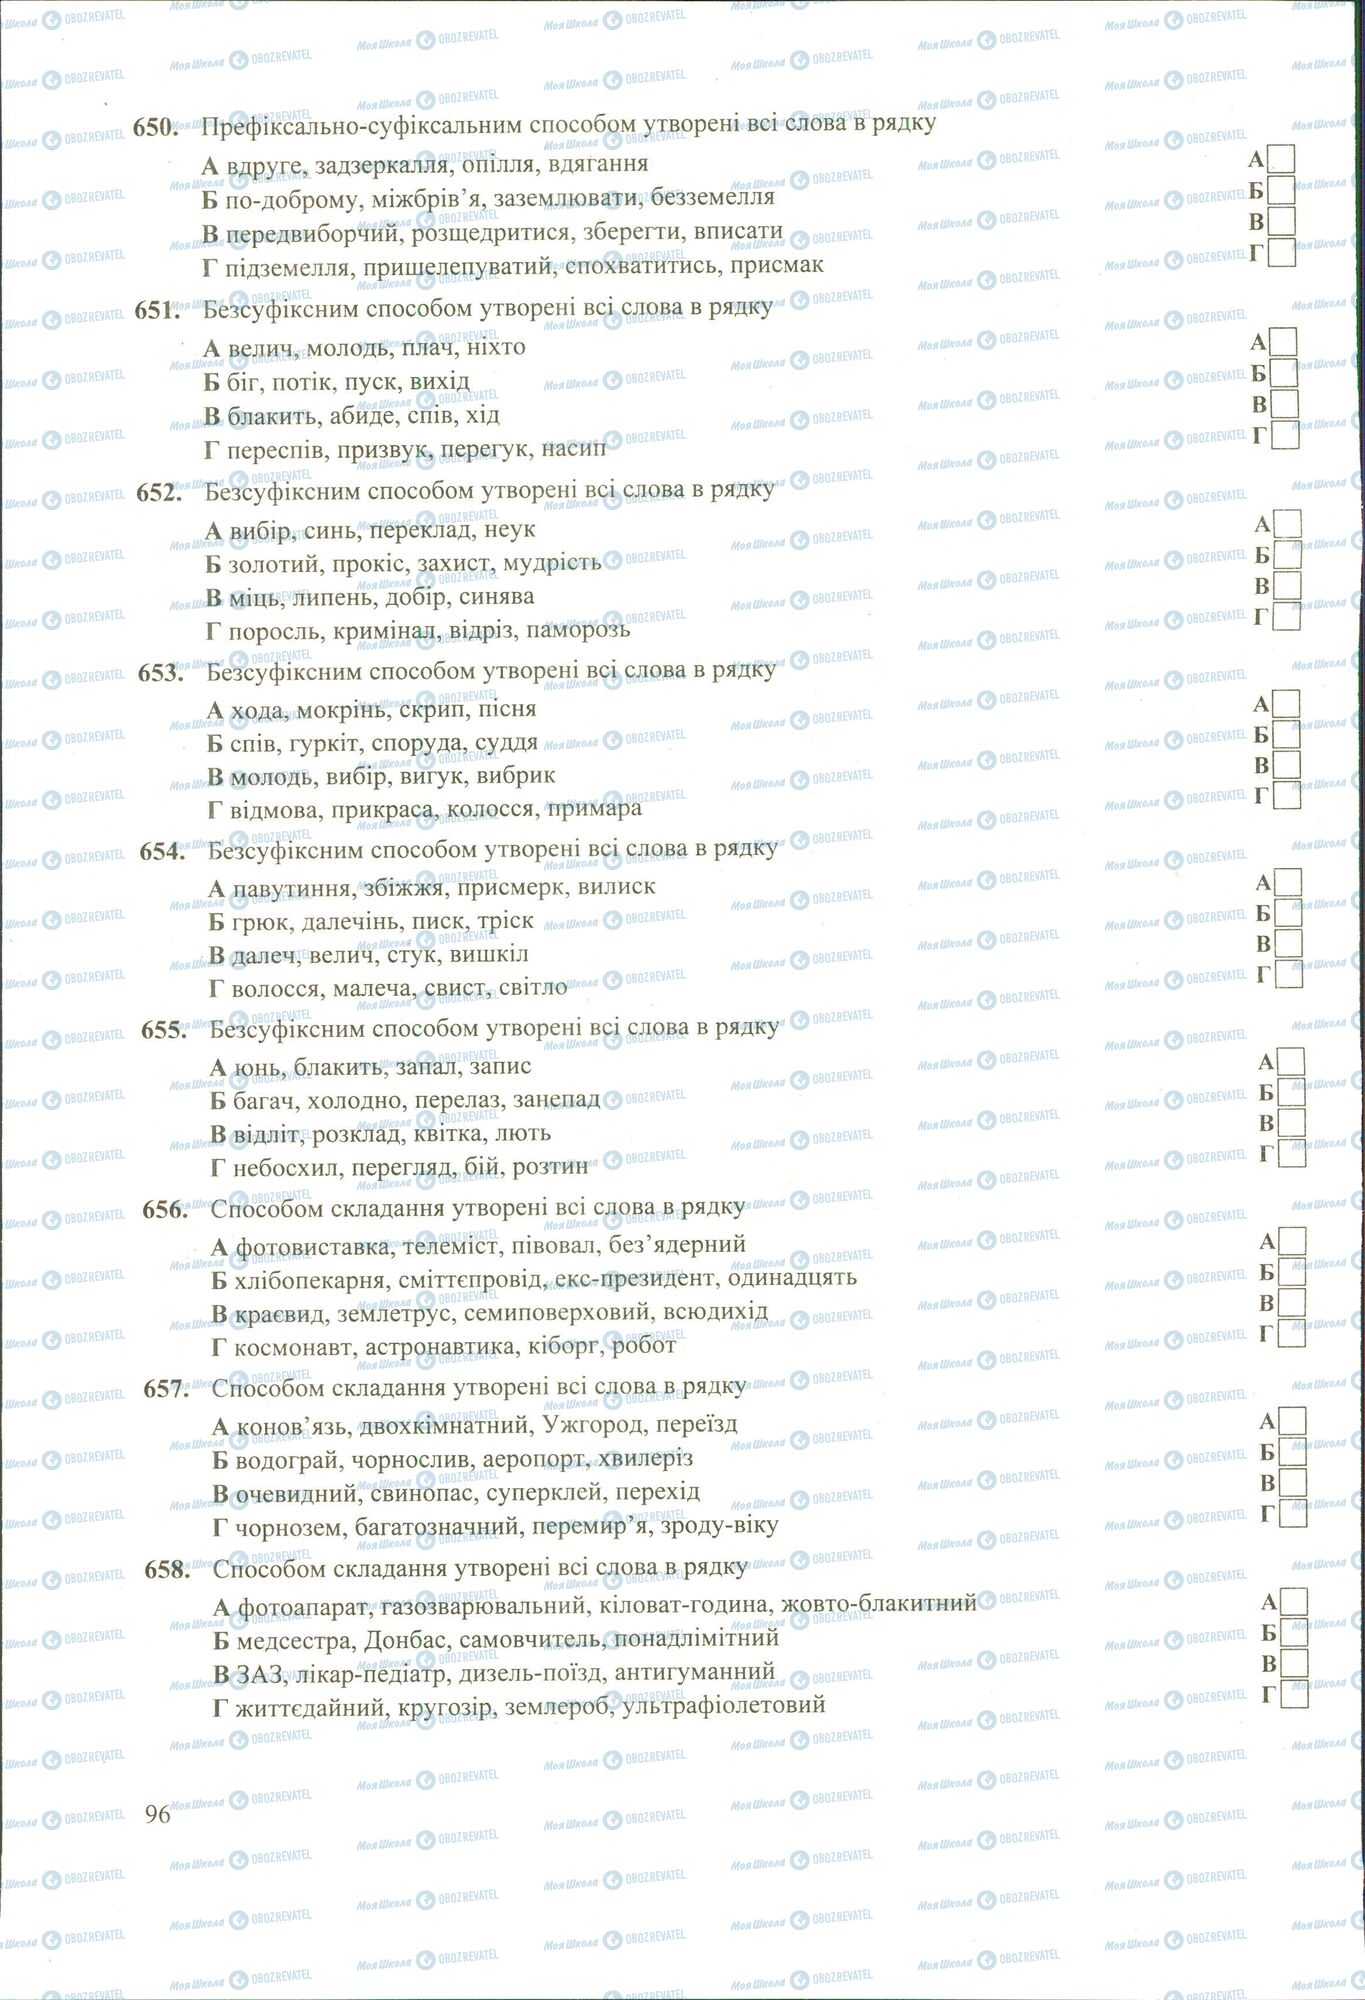 ЗНО Укр мова 11 класс страница 650-658